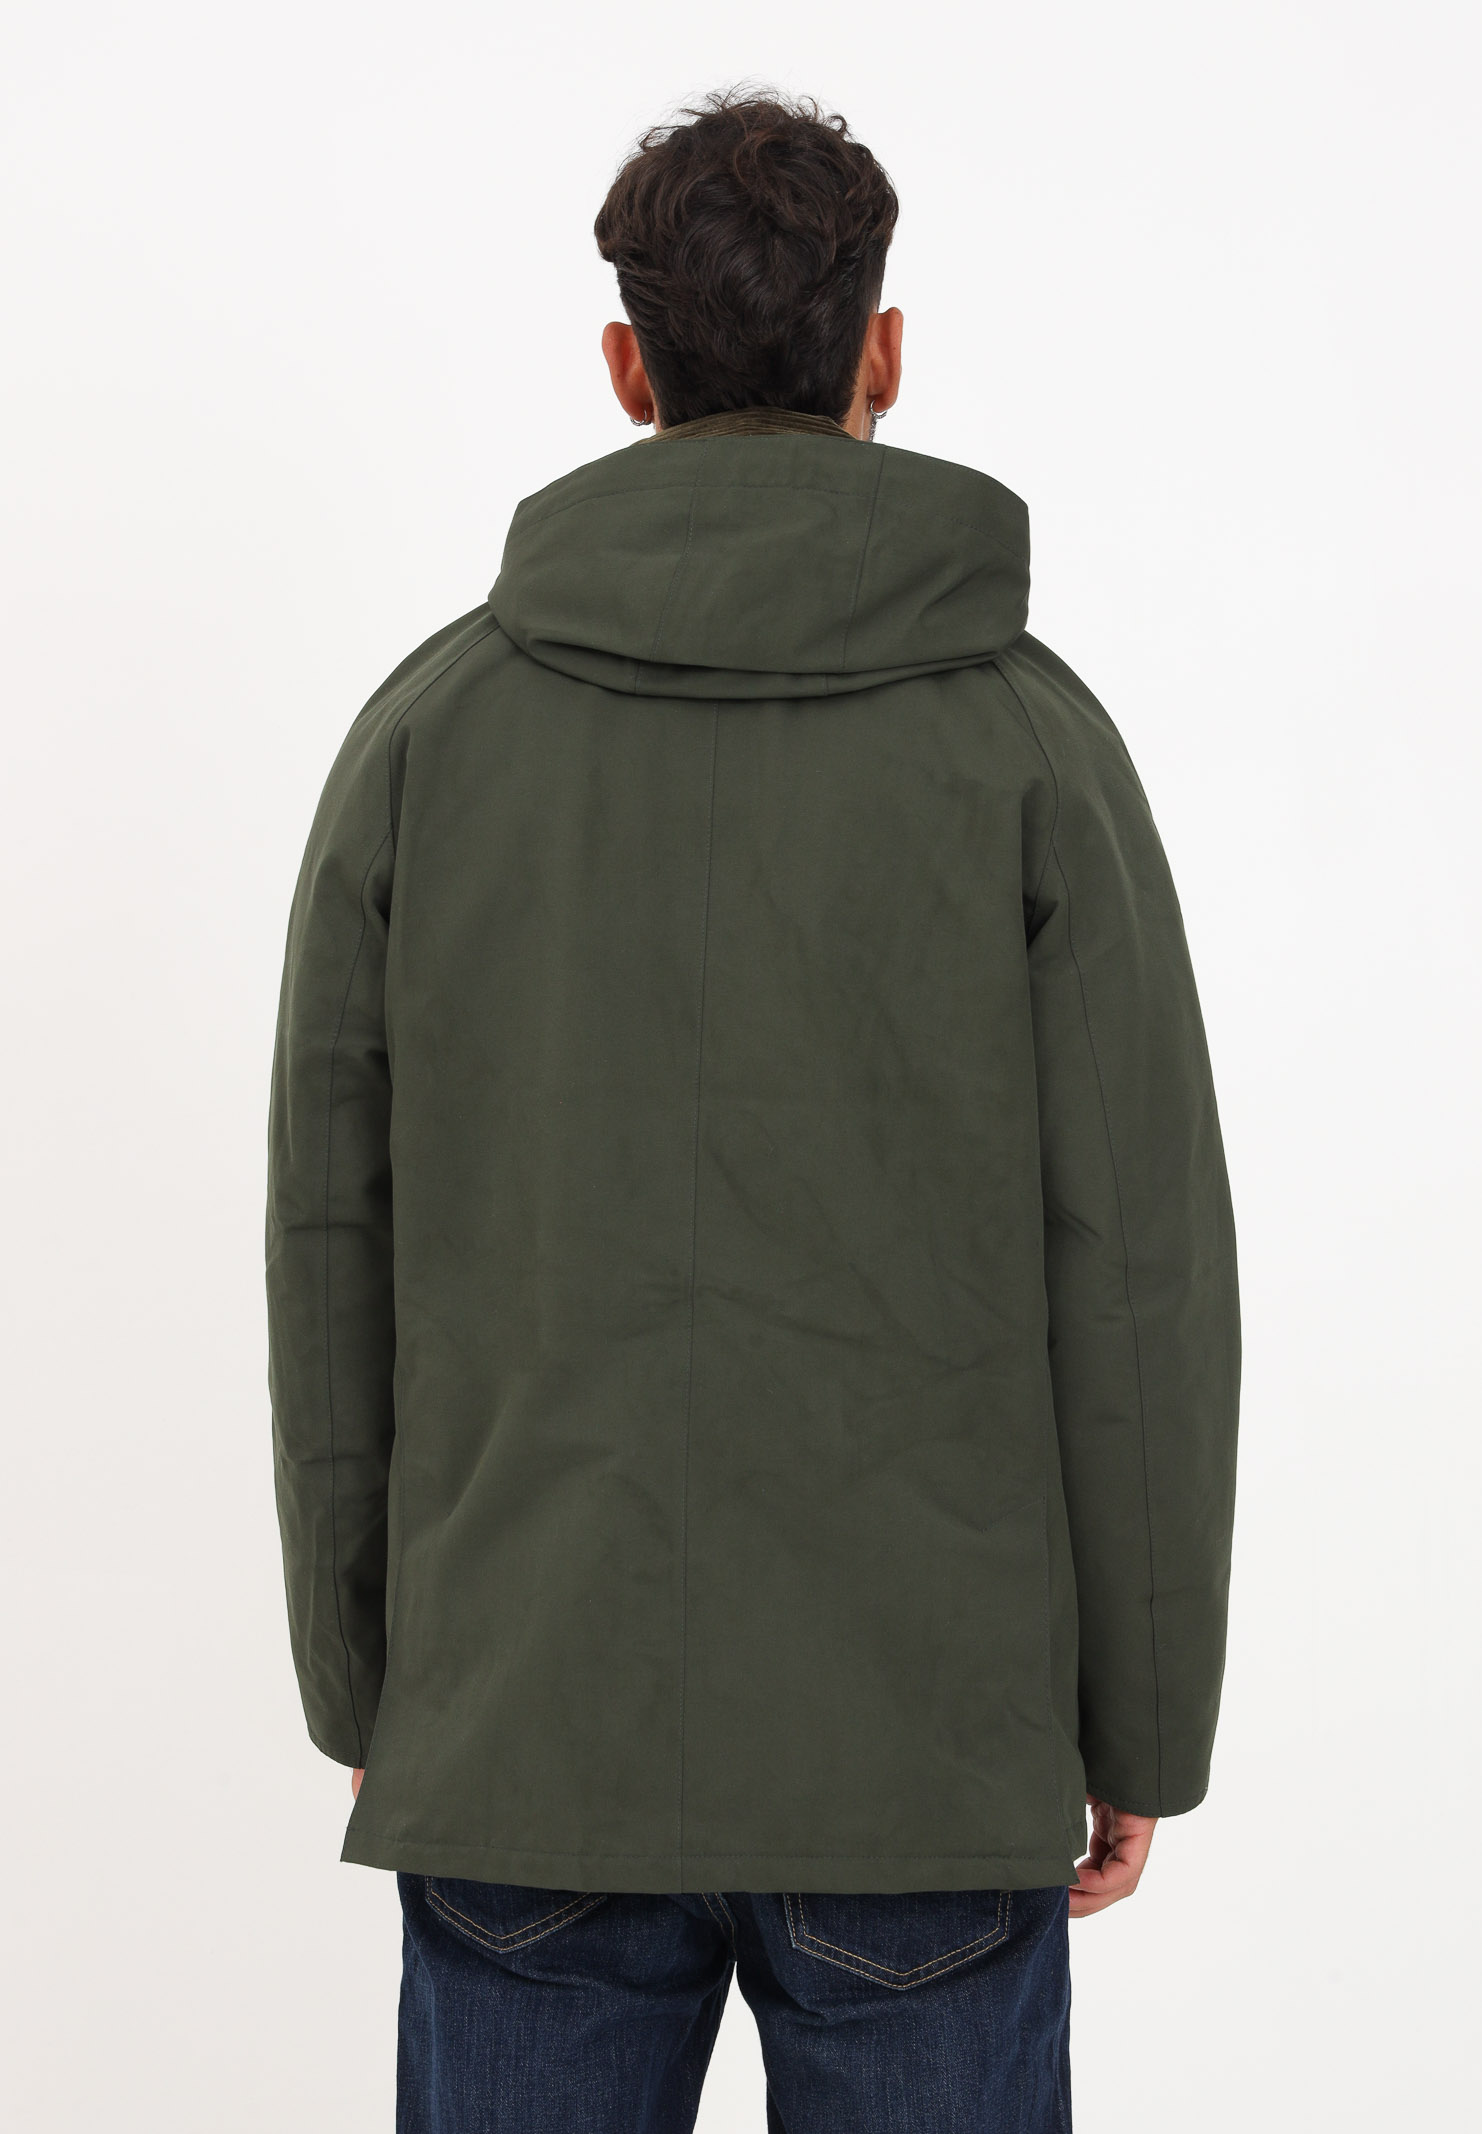 giacca lunga da uomo colore verde mimetico. BARBOUR | 232 - MWB1001 MWBSG51